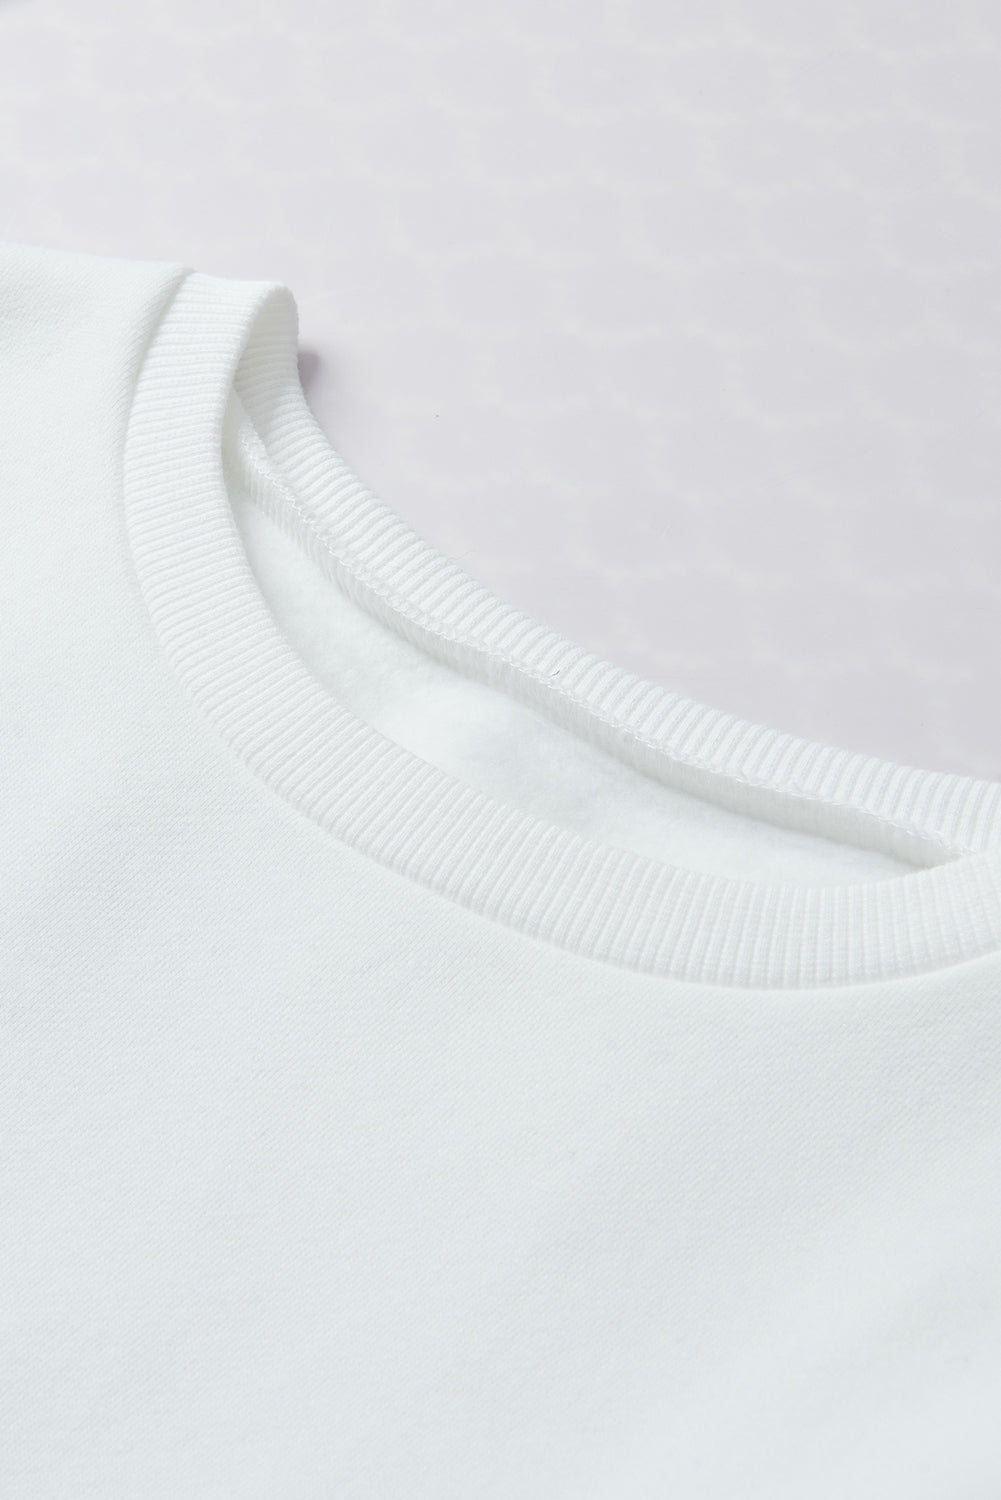 Sweat-shirt blanc avec lettres colorées, TOUT ira bien